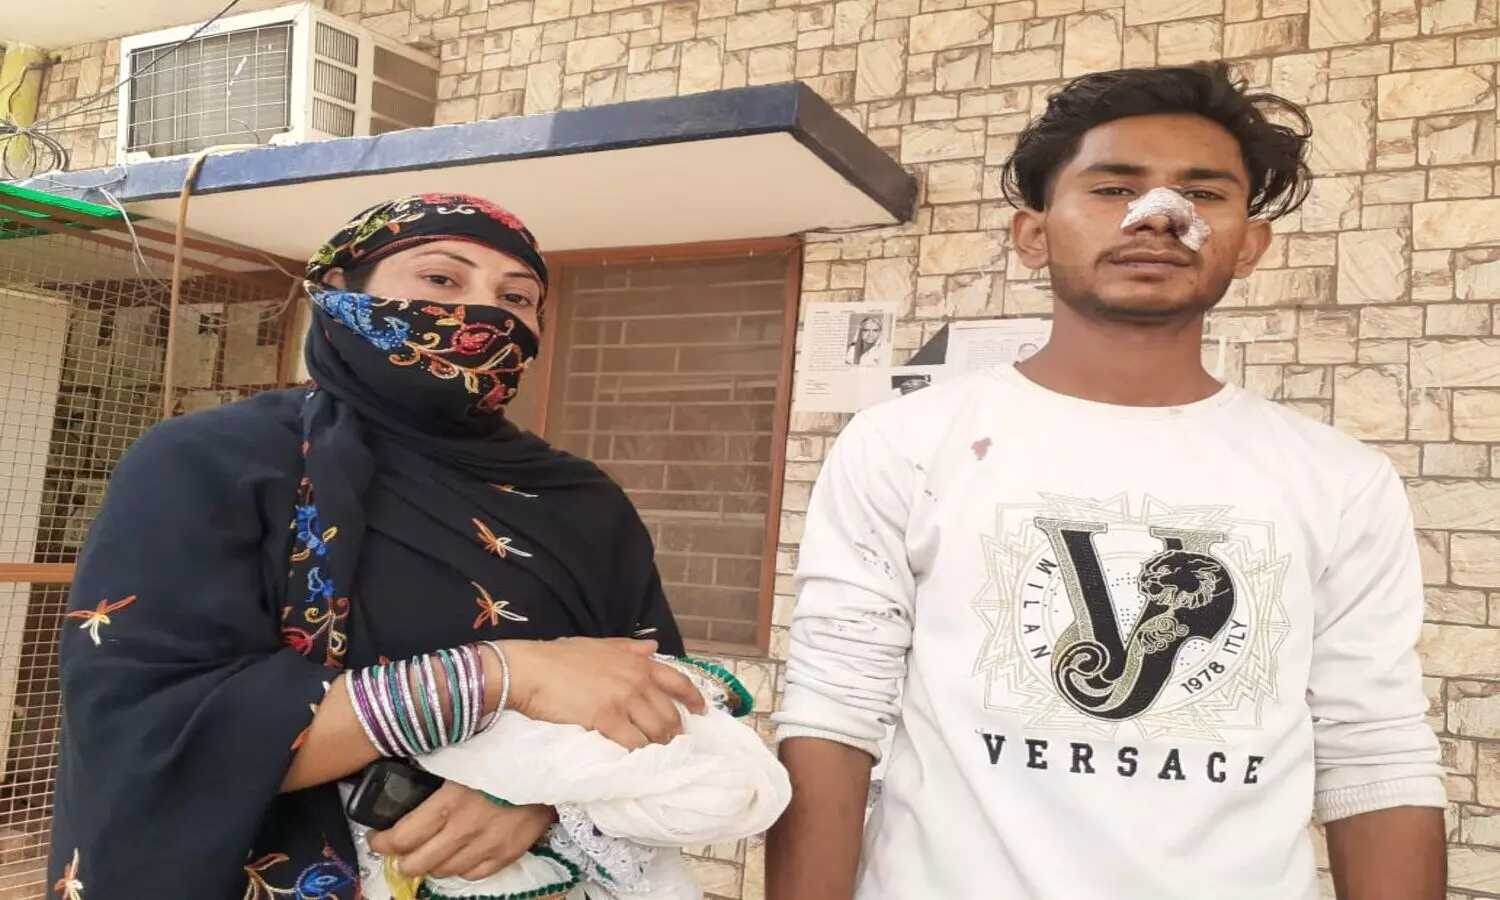 Baghpat: नमाज पढ़कर लौट रहे युवक जानलेवा हमला, पुलिस पर कार्रवाई ना करने का आरोप